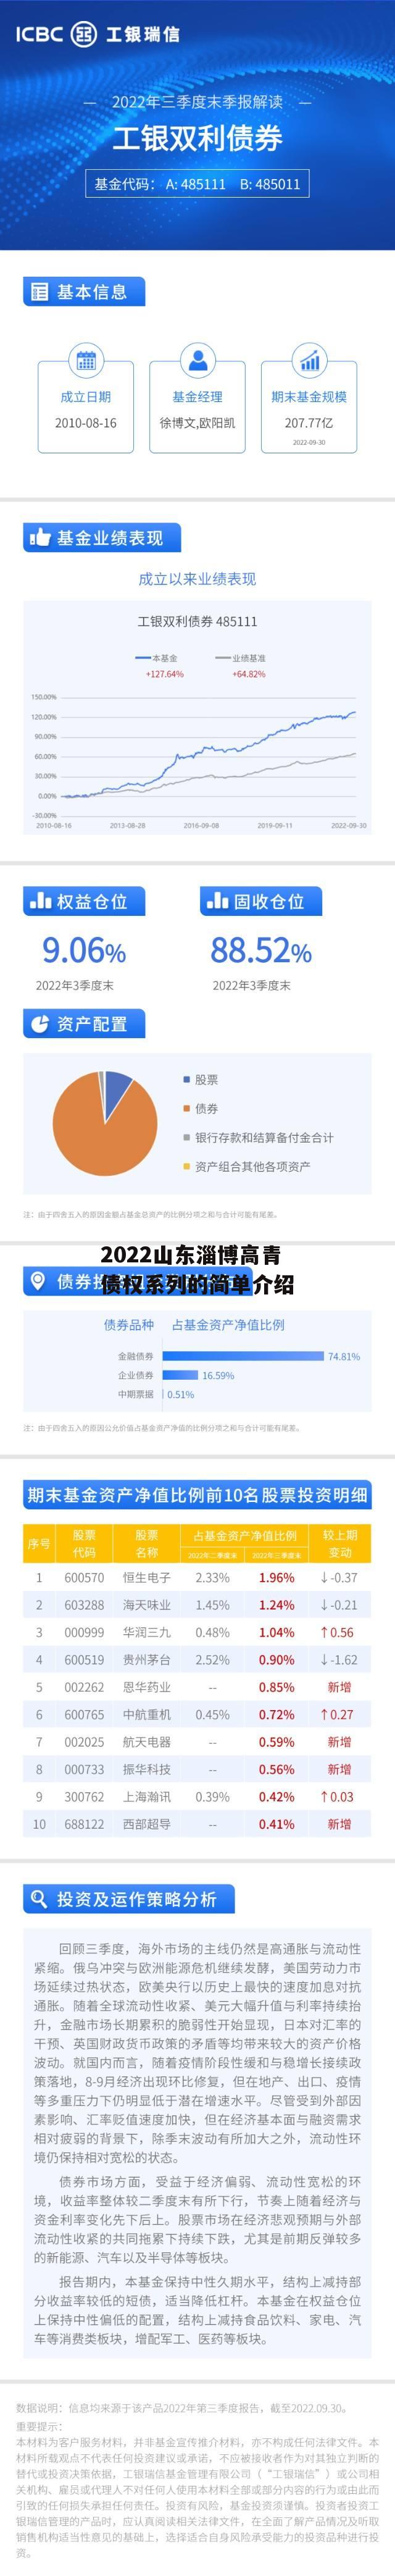 2022山东淄博高青债权系列的简单介绍